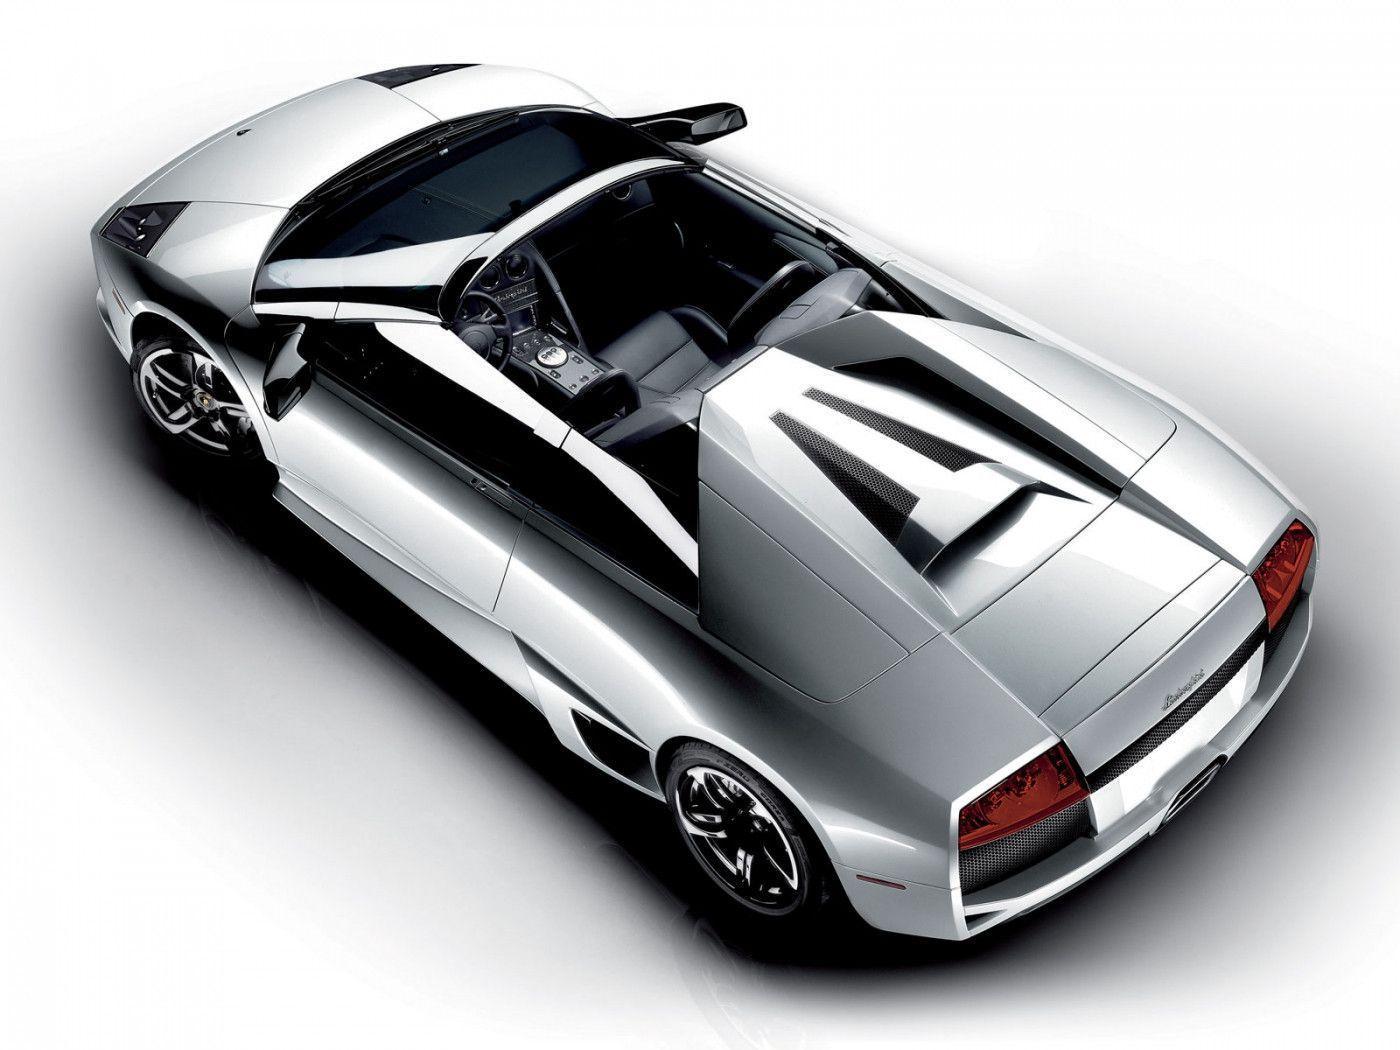 SPORTS CARS: Lamborghini reventon roadster wallpaper